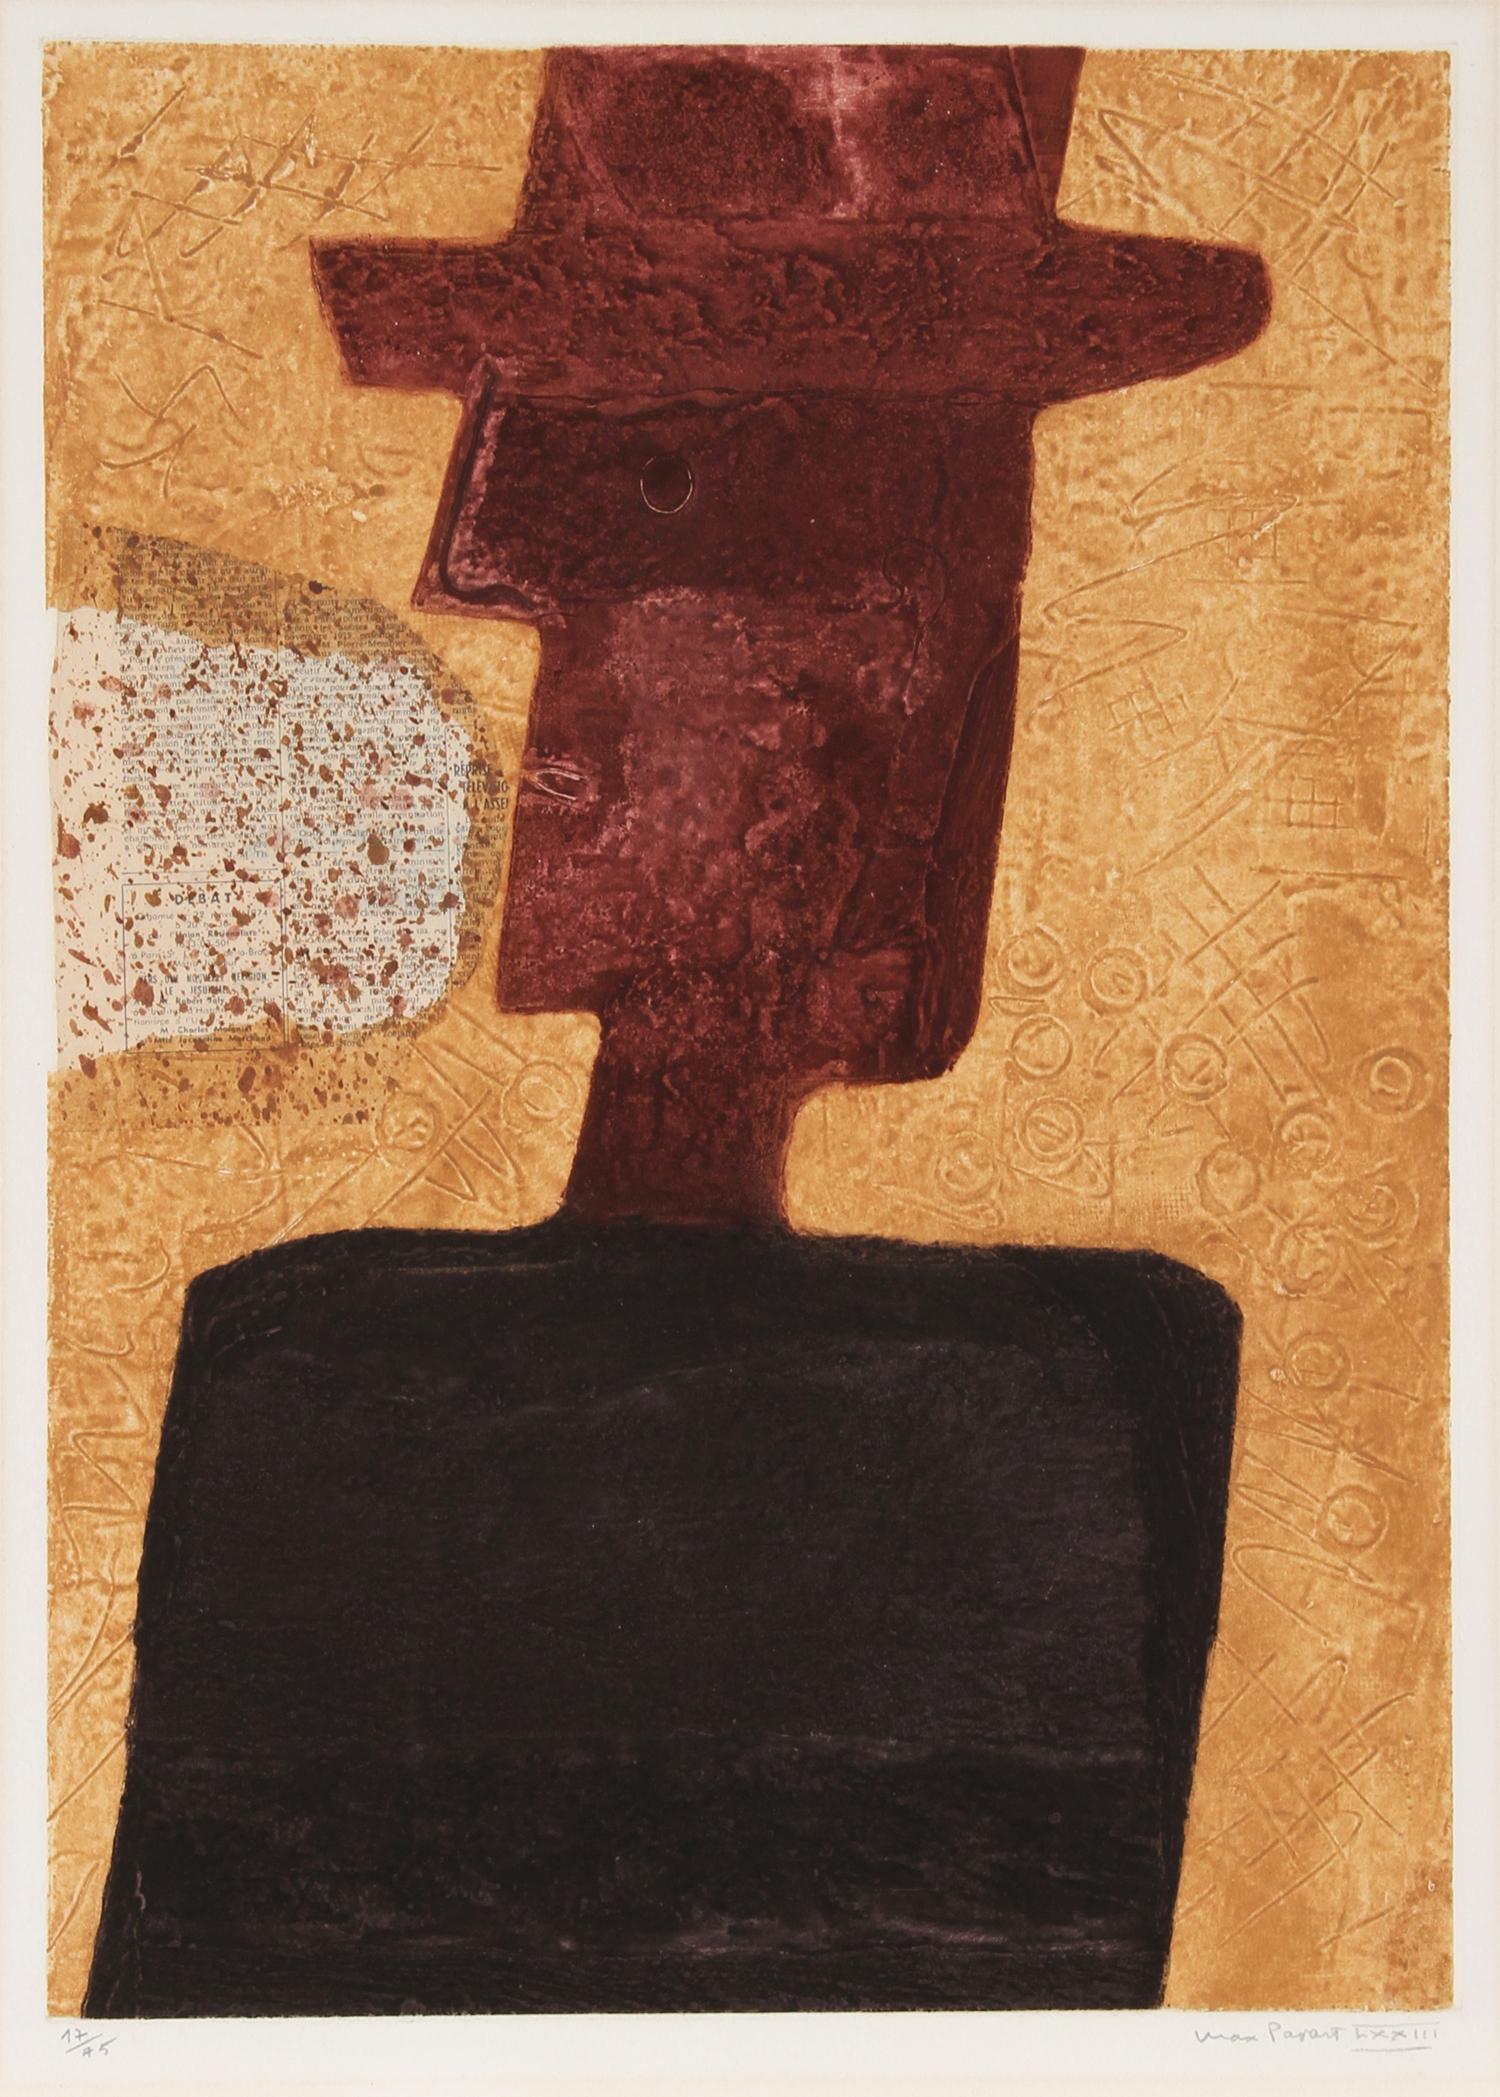 L'Homme au Chapeau von Max Papart, Franzose (1911-1994)
Datum: ca. 1970
Aquatinta-Radierung und Carborundum, mit Bleistift signiert und nummeriert
Auflage von 17/75
Bildgröße: 23 x 16,5 Zoll
Größe: 72,39 cm x 55,88 cm (28,5 Zoll x 22 Zoll)